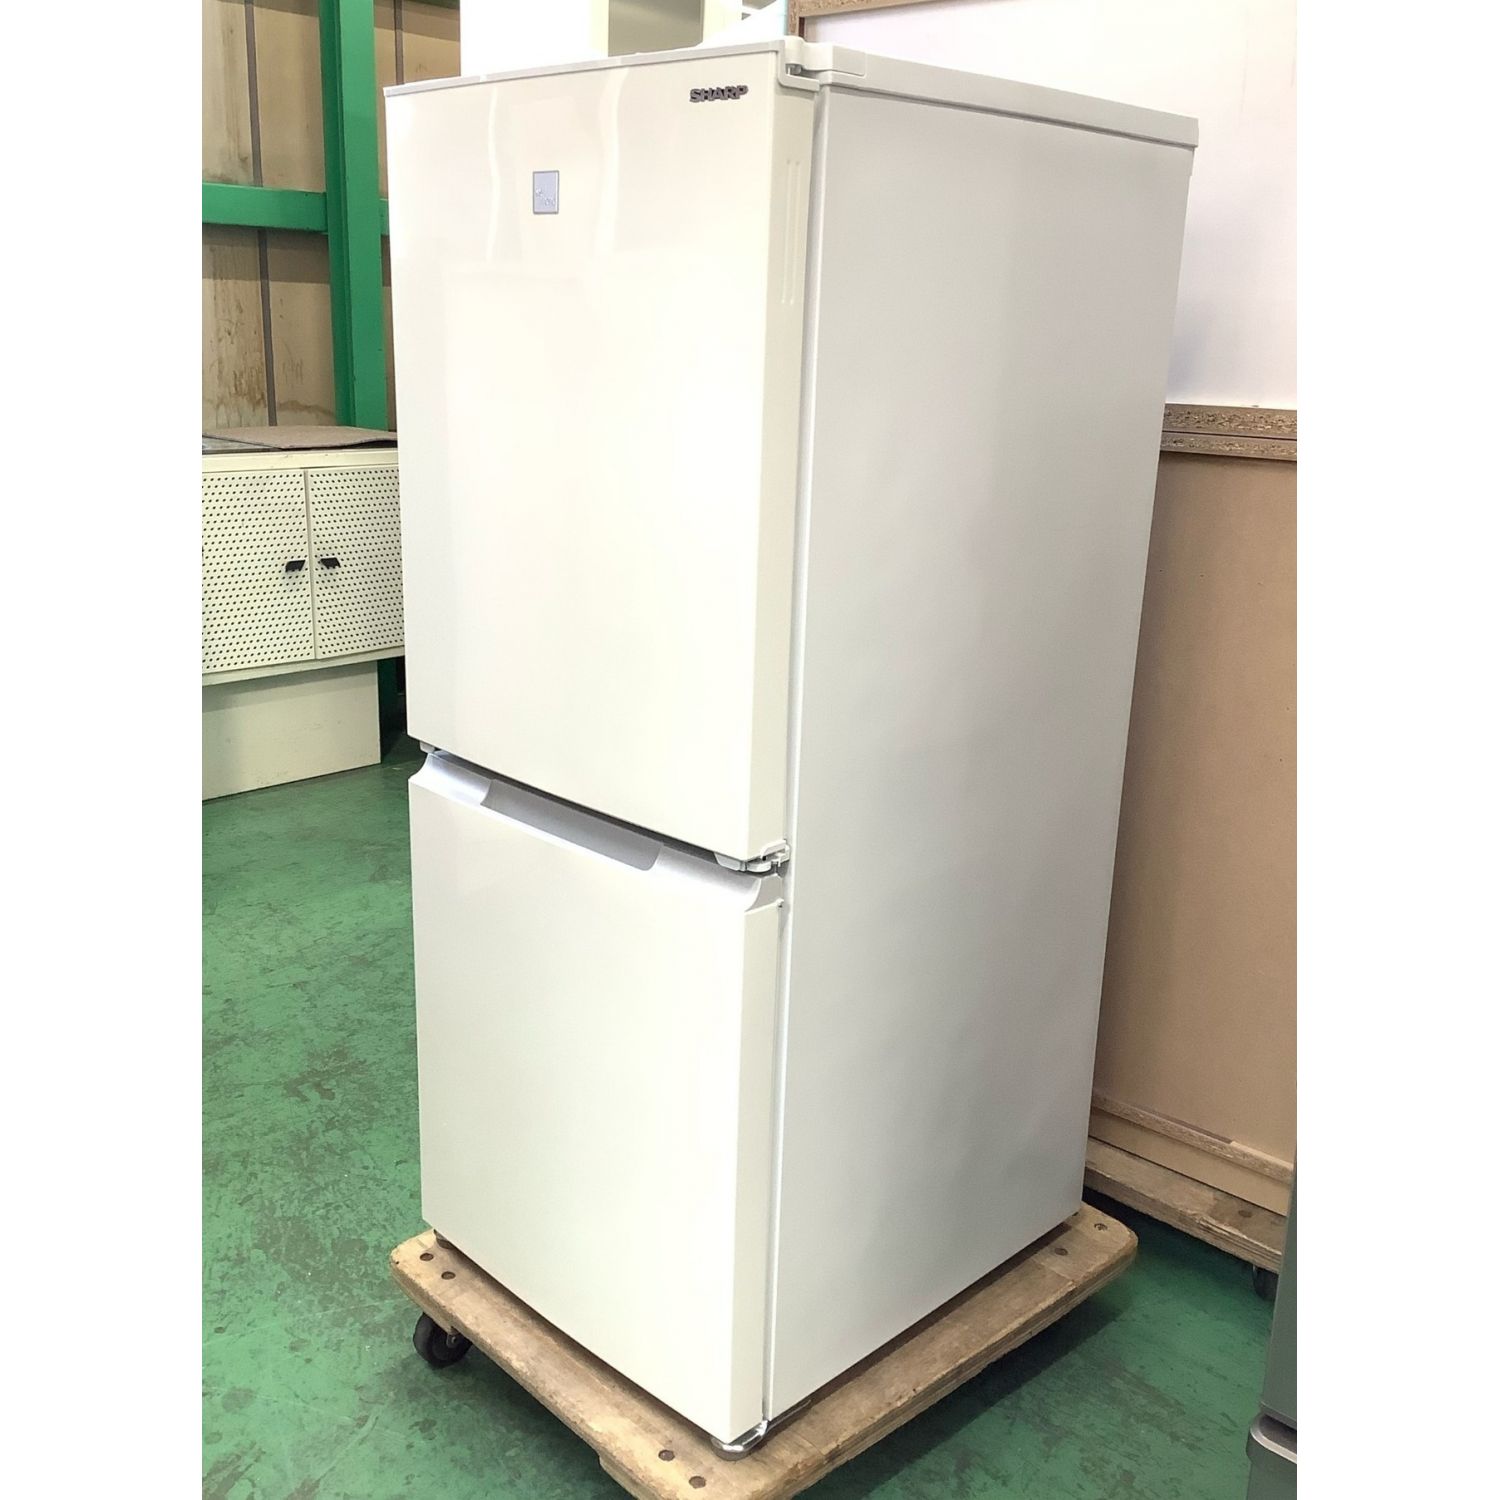 MITSUBISHI MR-JX60W-BR 冷凍冷蔵庫 茶色 大型 600L - 生活家電